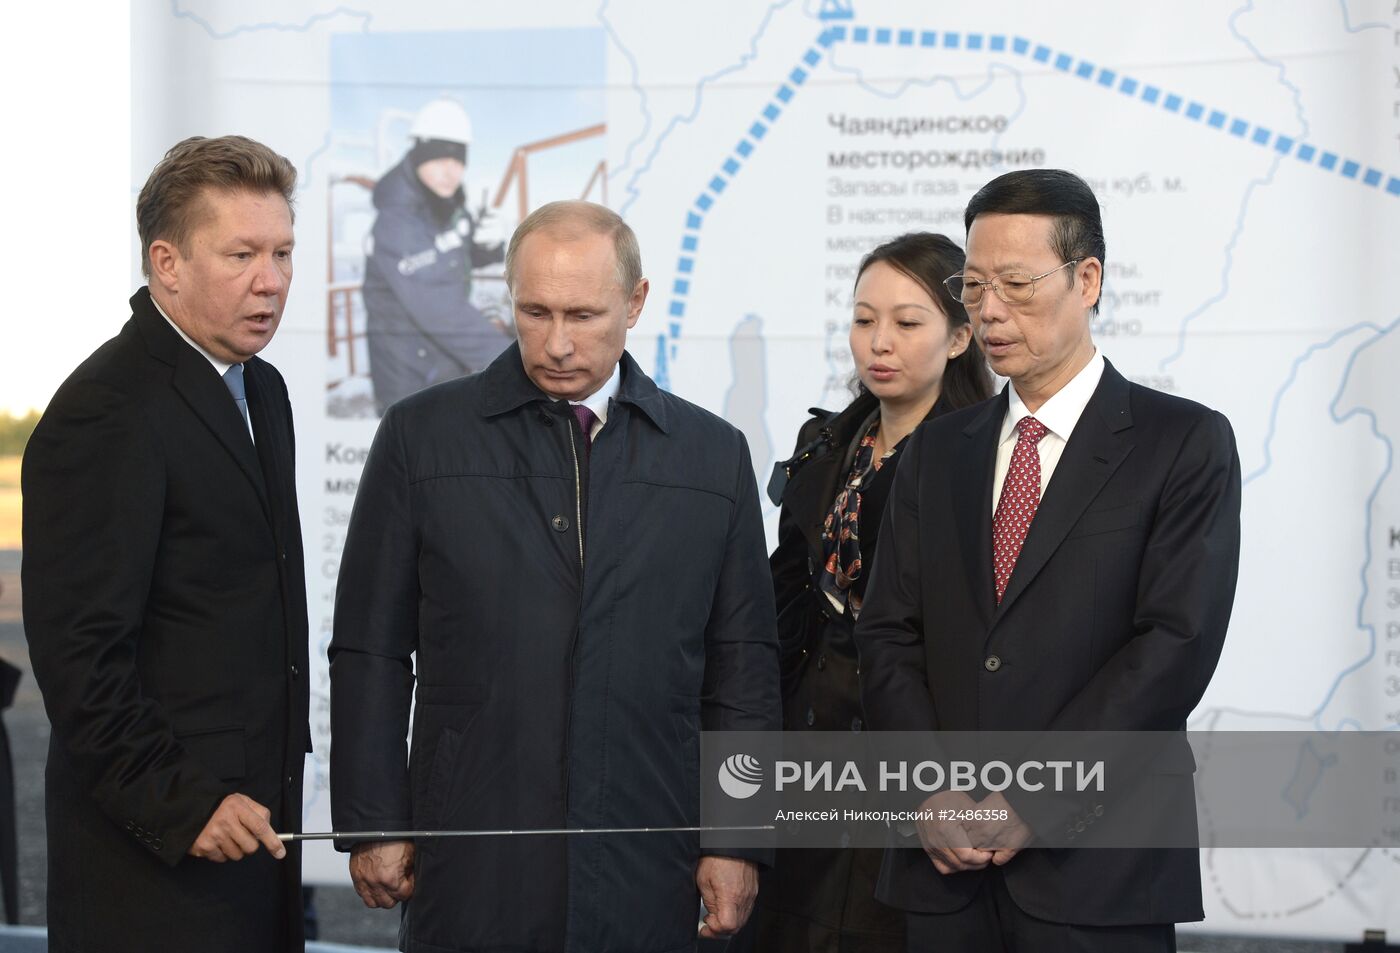 Рабочая поездка В.Путина в Дальневосточный федеральный округ